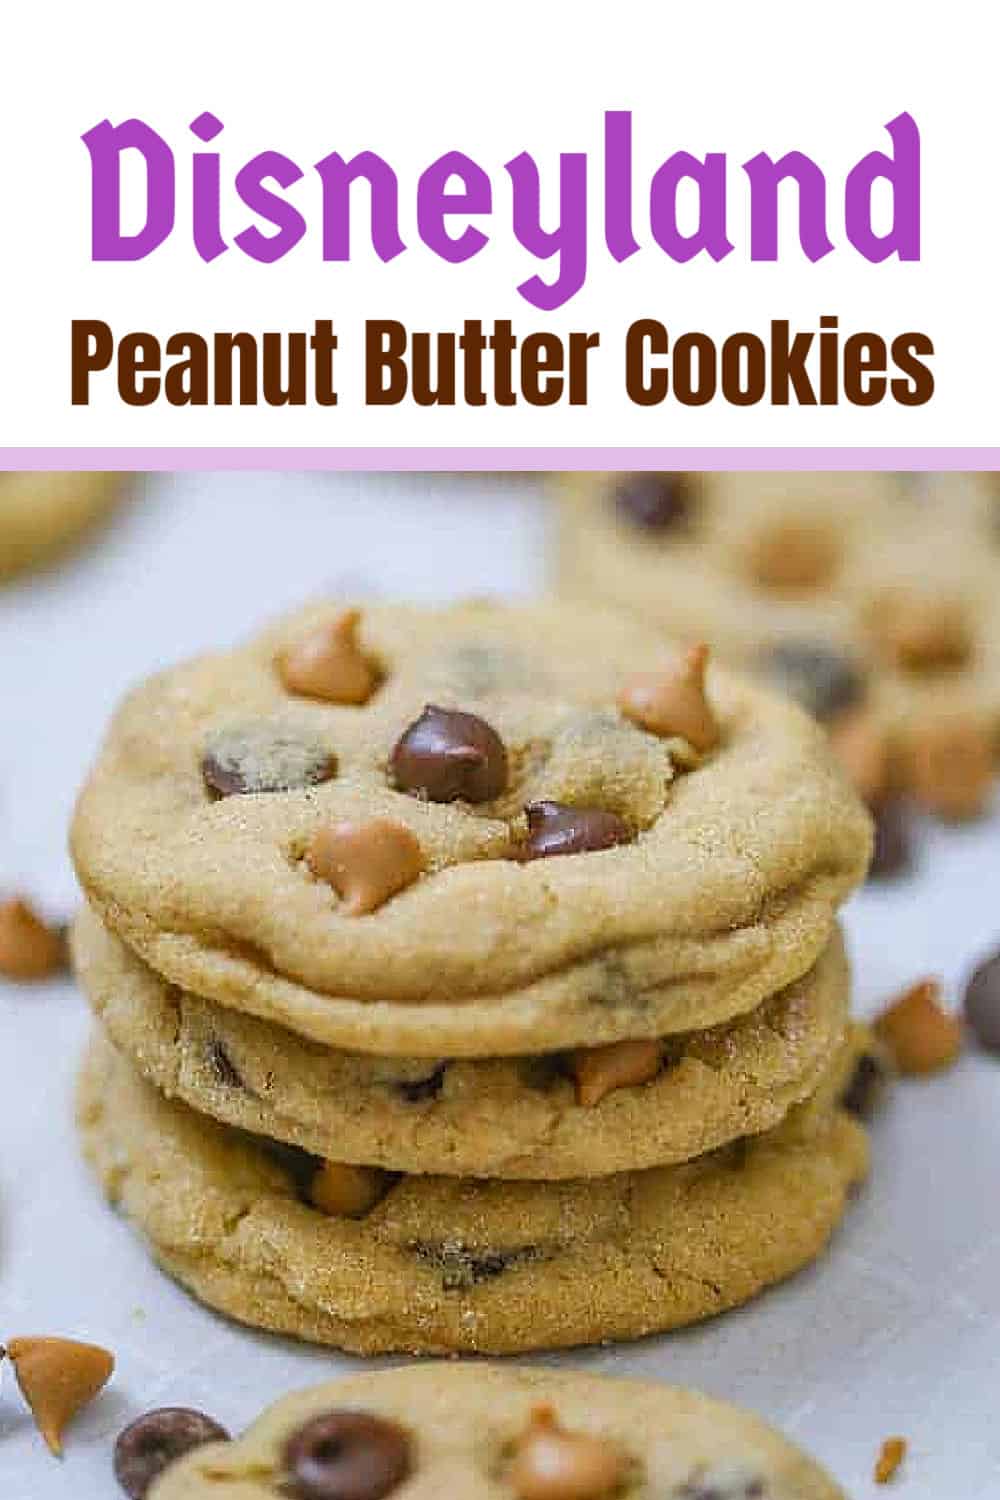 Disneyland Peanut Butter Cookies